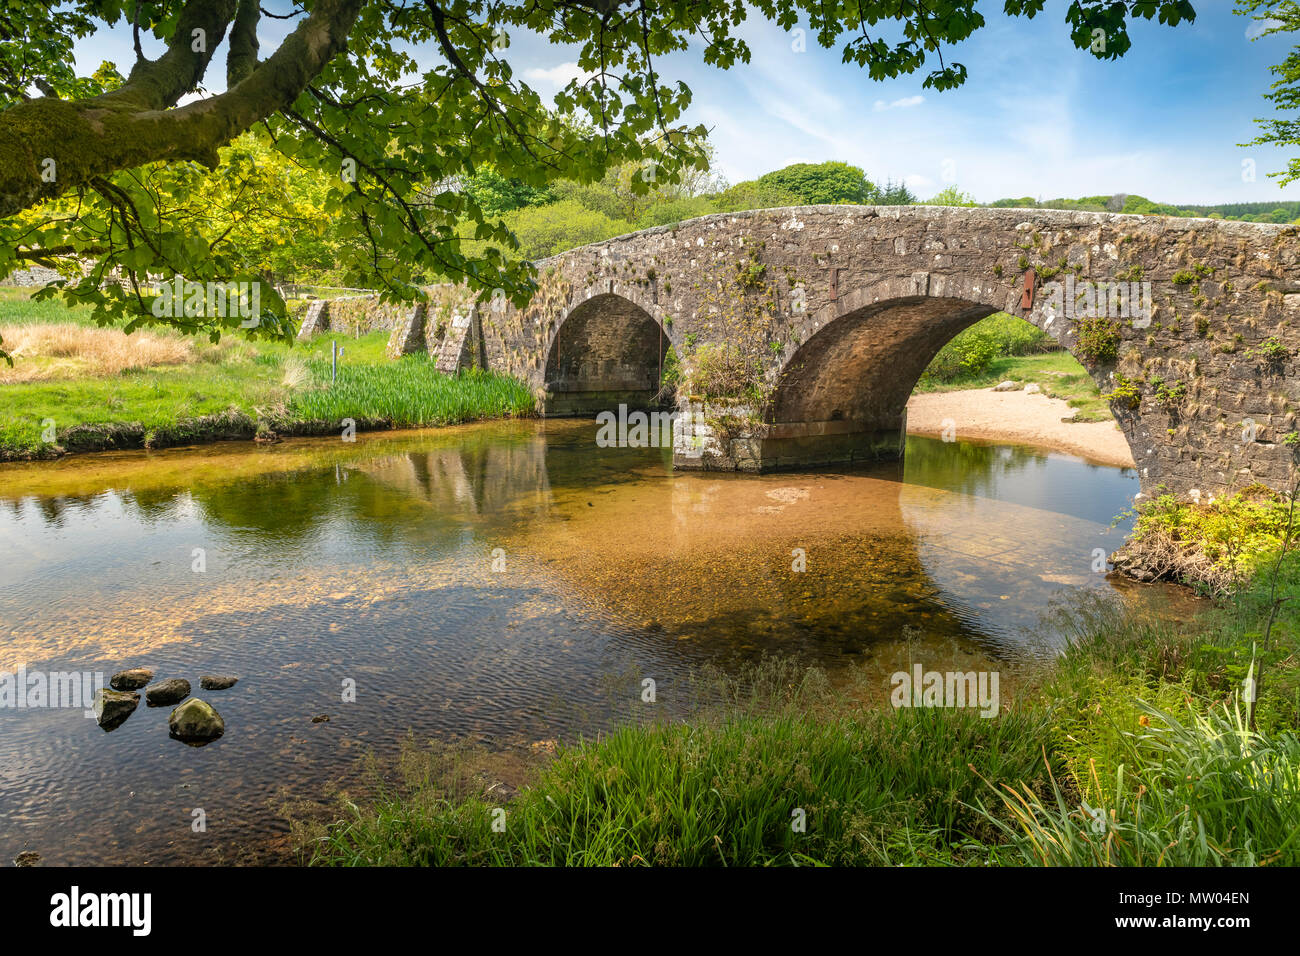 En una cálida tarde de verano, el East Dart River escurre bajo el hermoso puente construido en granito en dos puentes en el parque nacional de Dartmoor. Foto de stock